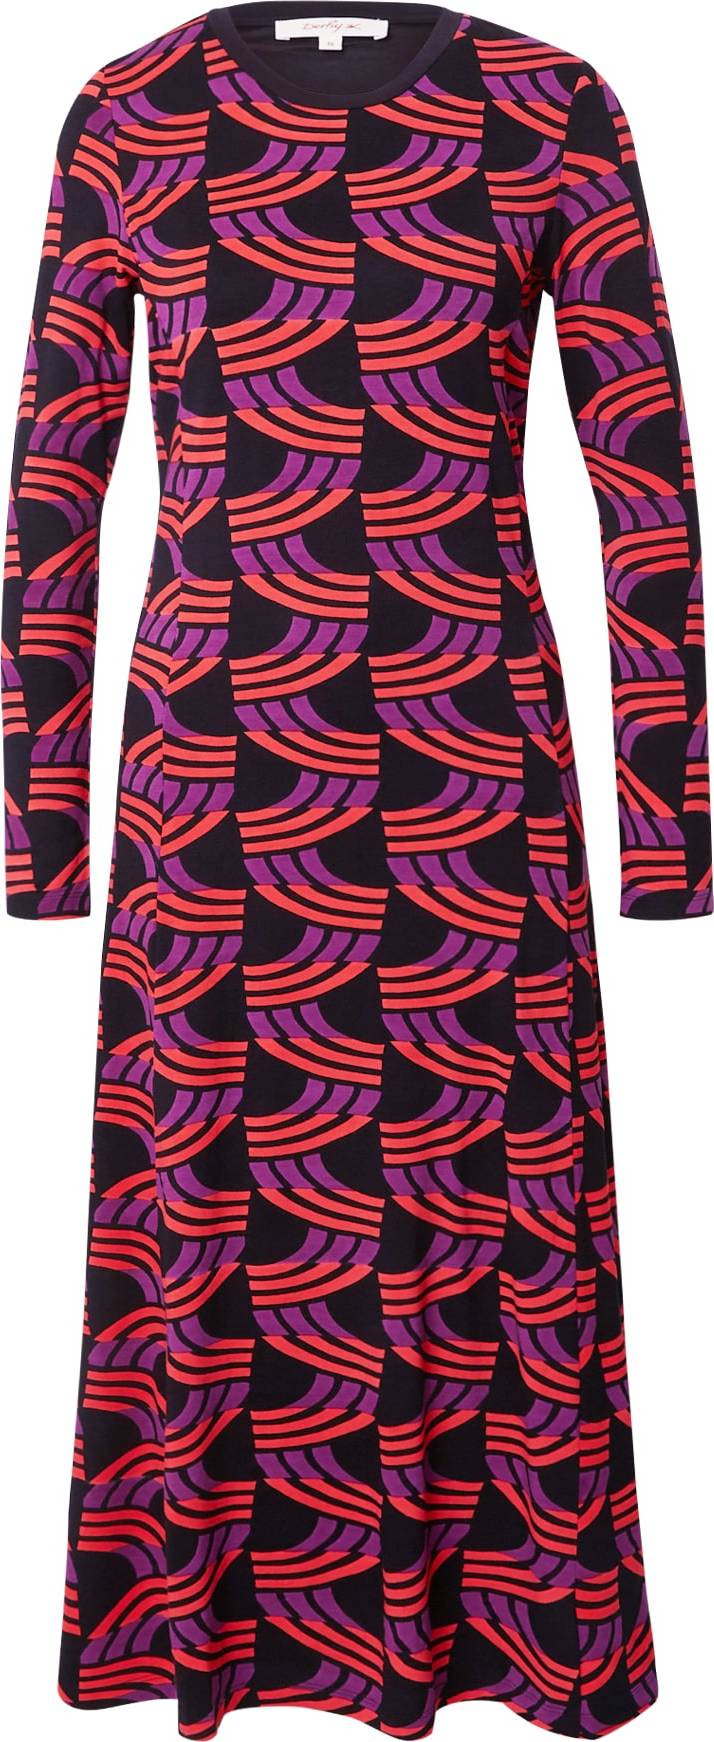 Šaty 'ALEXANDRINE' Derhy fialová / pitaya / černá